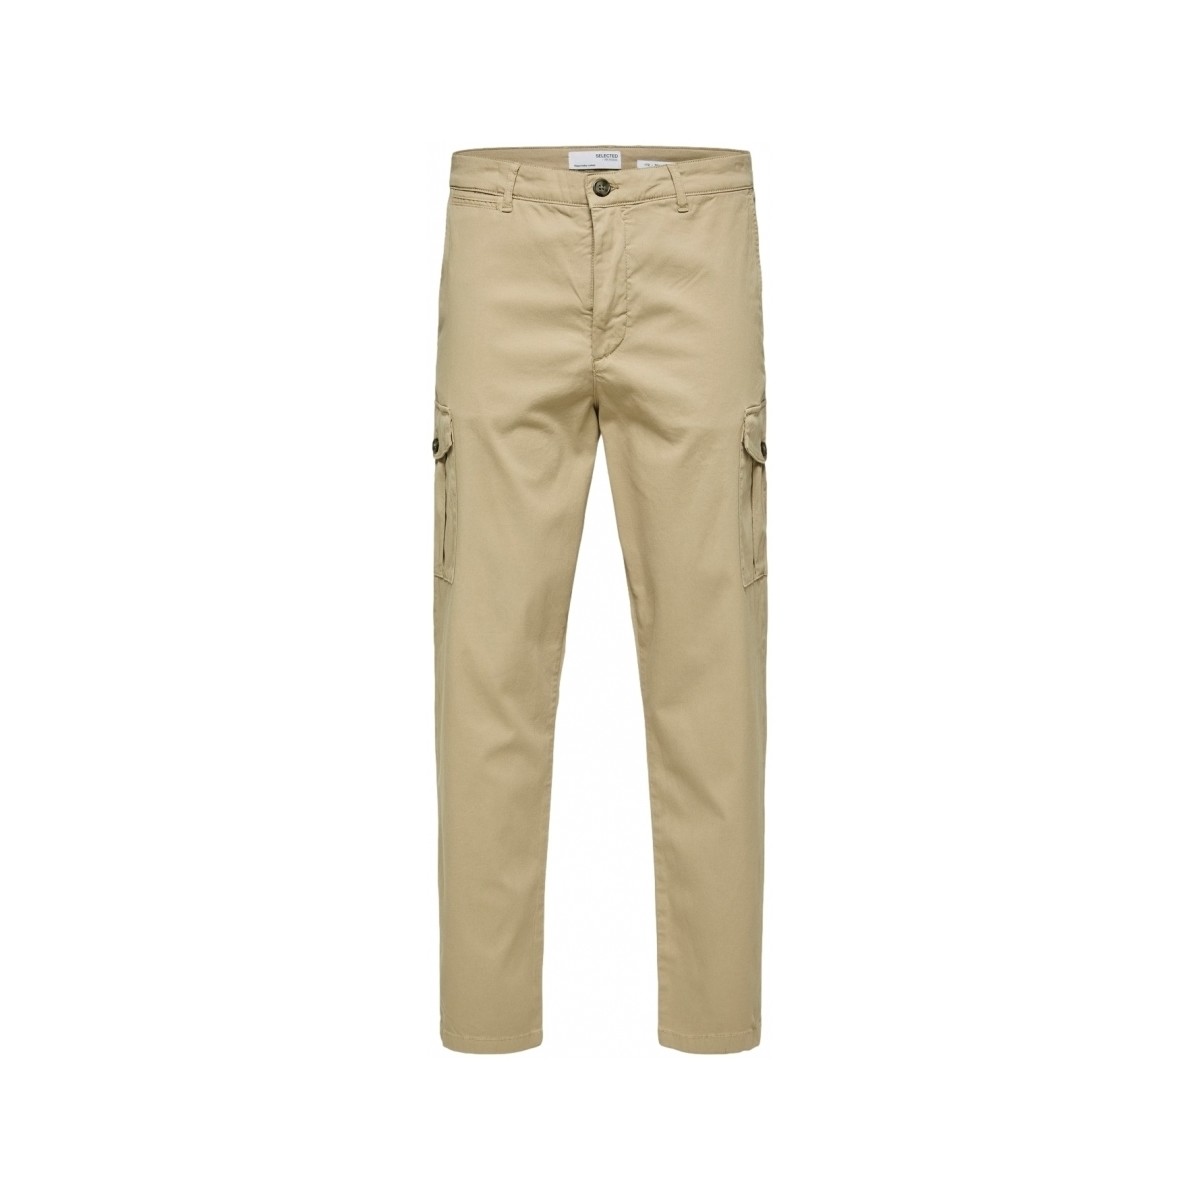 Textiel Heren Broeken / Pantalons Selected Slim Tapered Wick 172 Cargo Pants - Chinchilla Beige